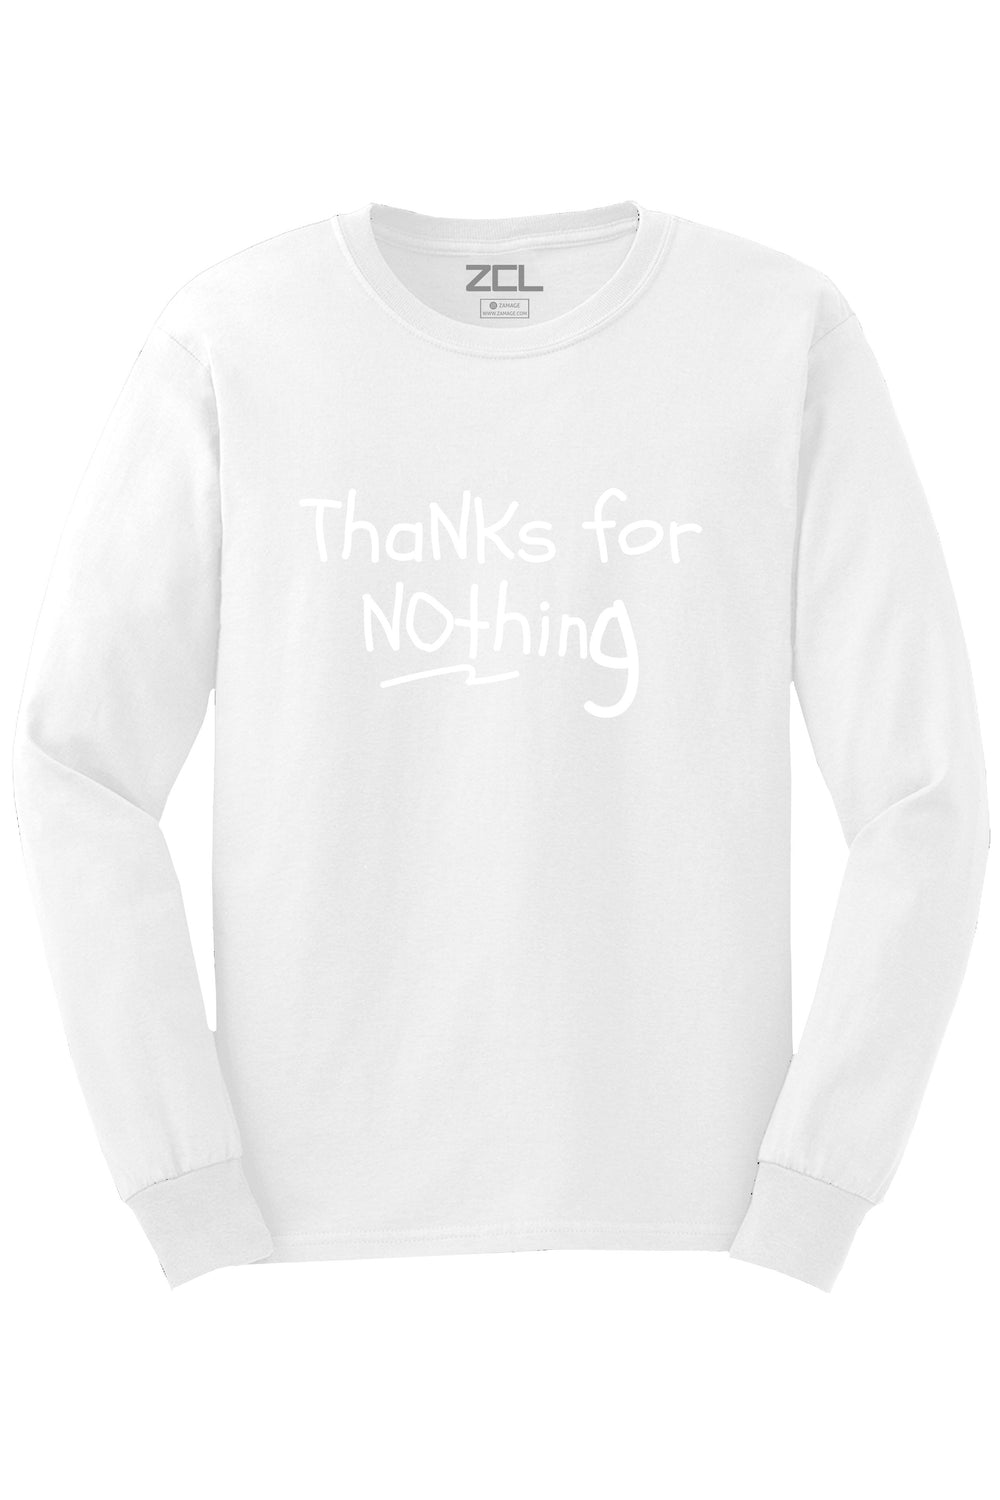 Thanks For Nothing Long Sleeve Tee (White Logo) - Zamage